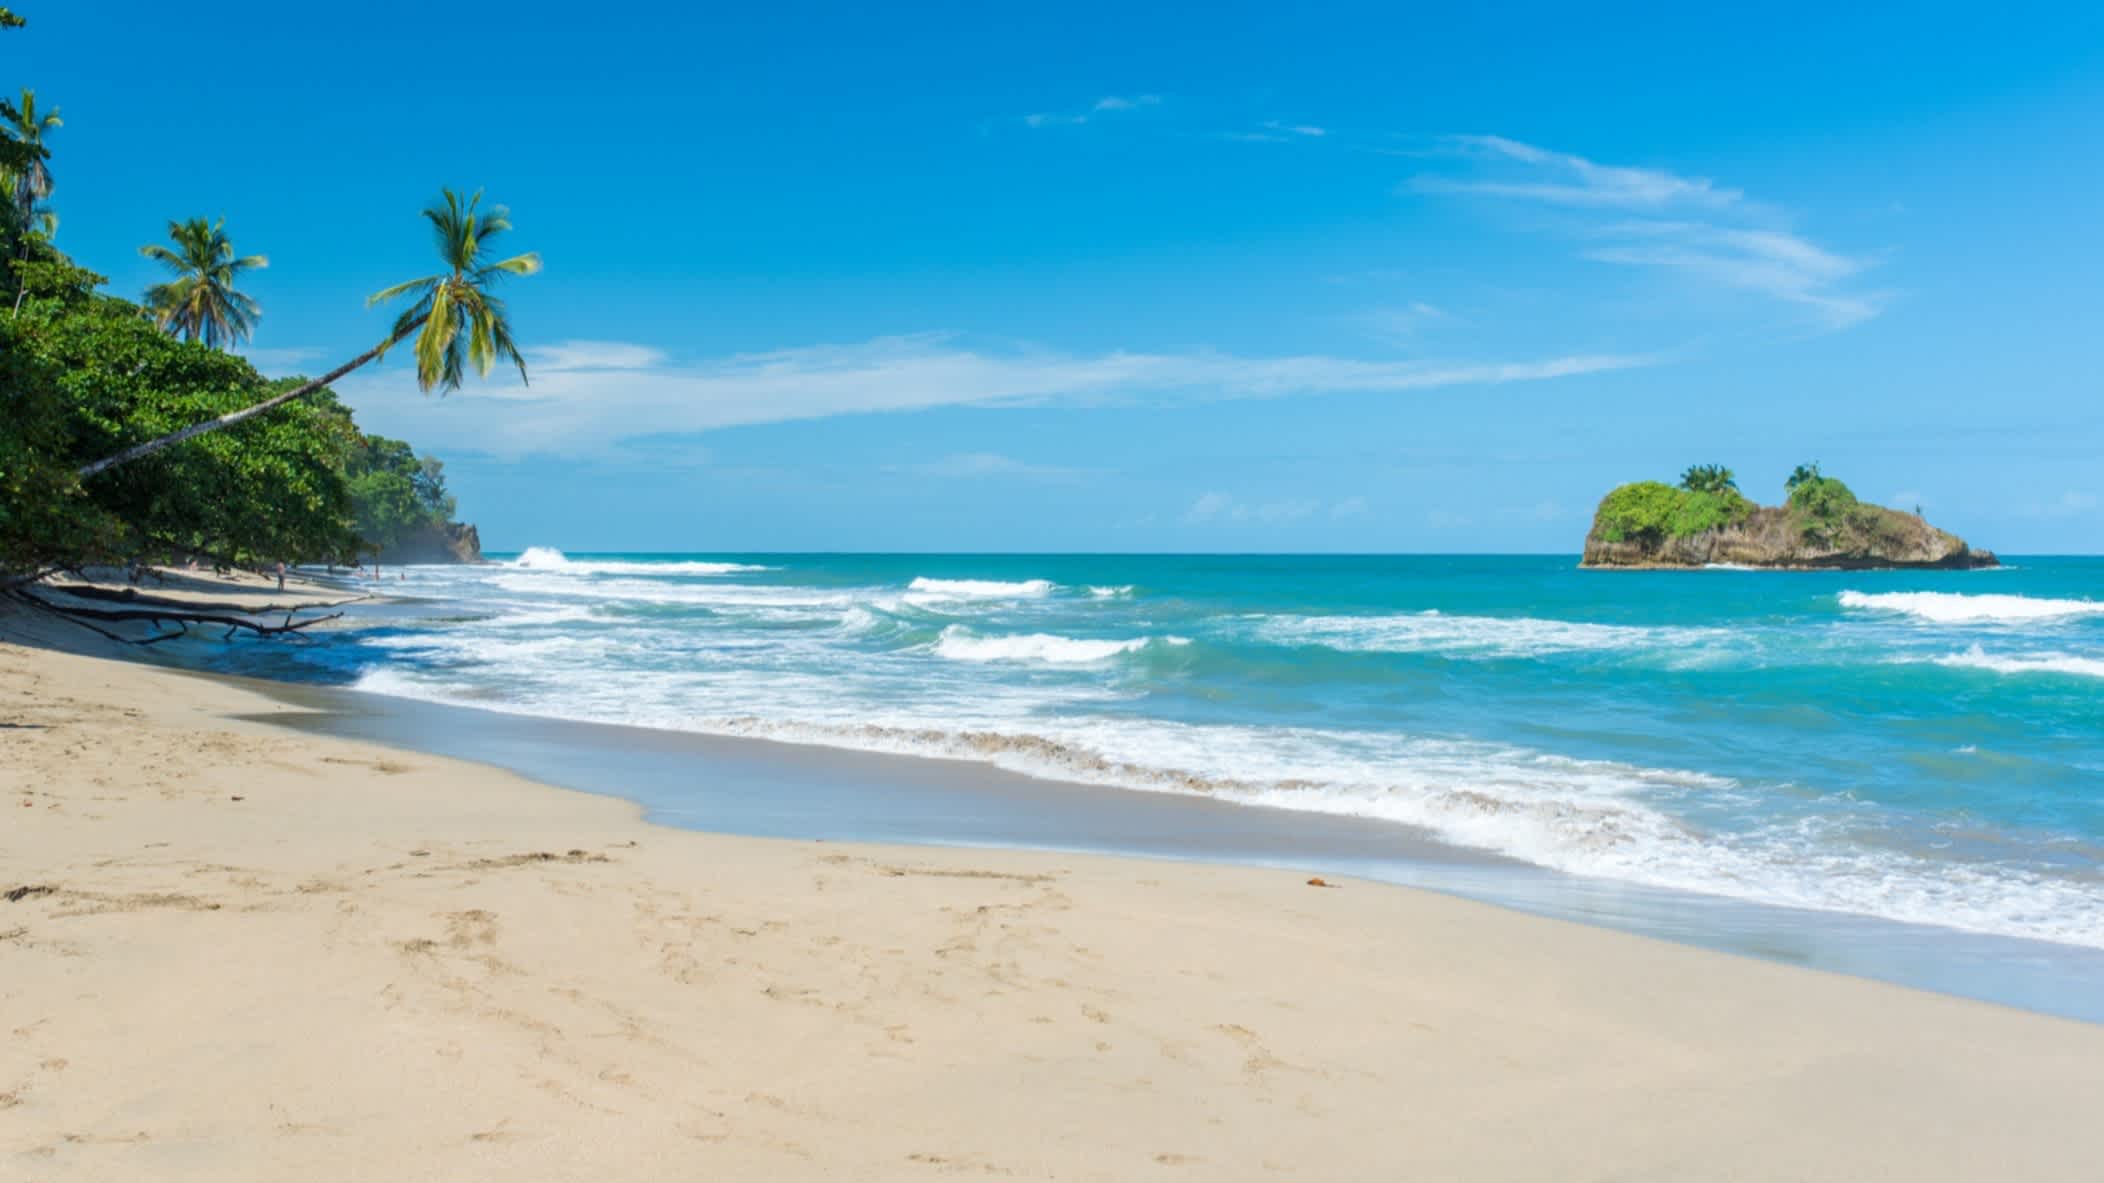 Tropischer Strand Playa Cocles in der Nähe von Puerto Viejo in Costa Rica mit seinem weißen Sand, einigen Palmen im Bild sowie dem schönen Meer und einer kleinen unbewohnten vorgelagerten Insel. 

